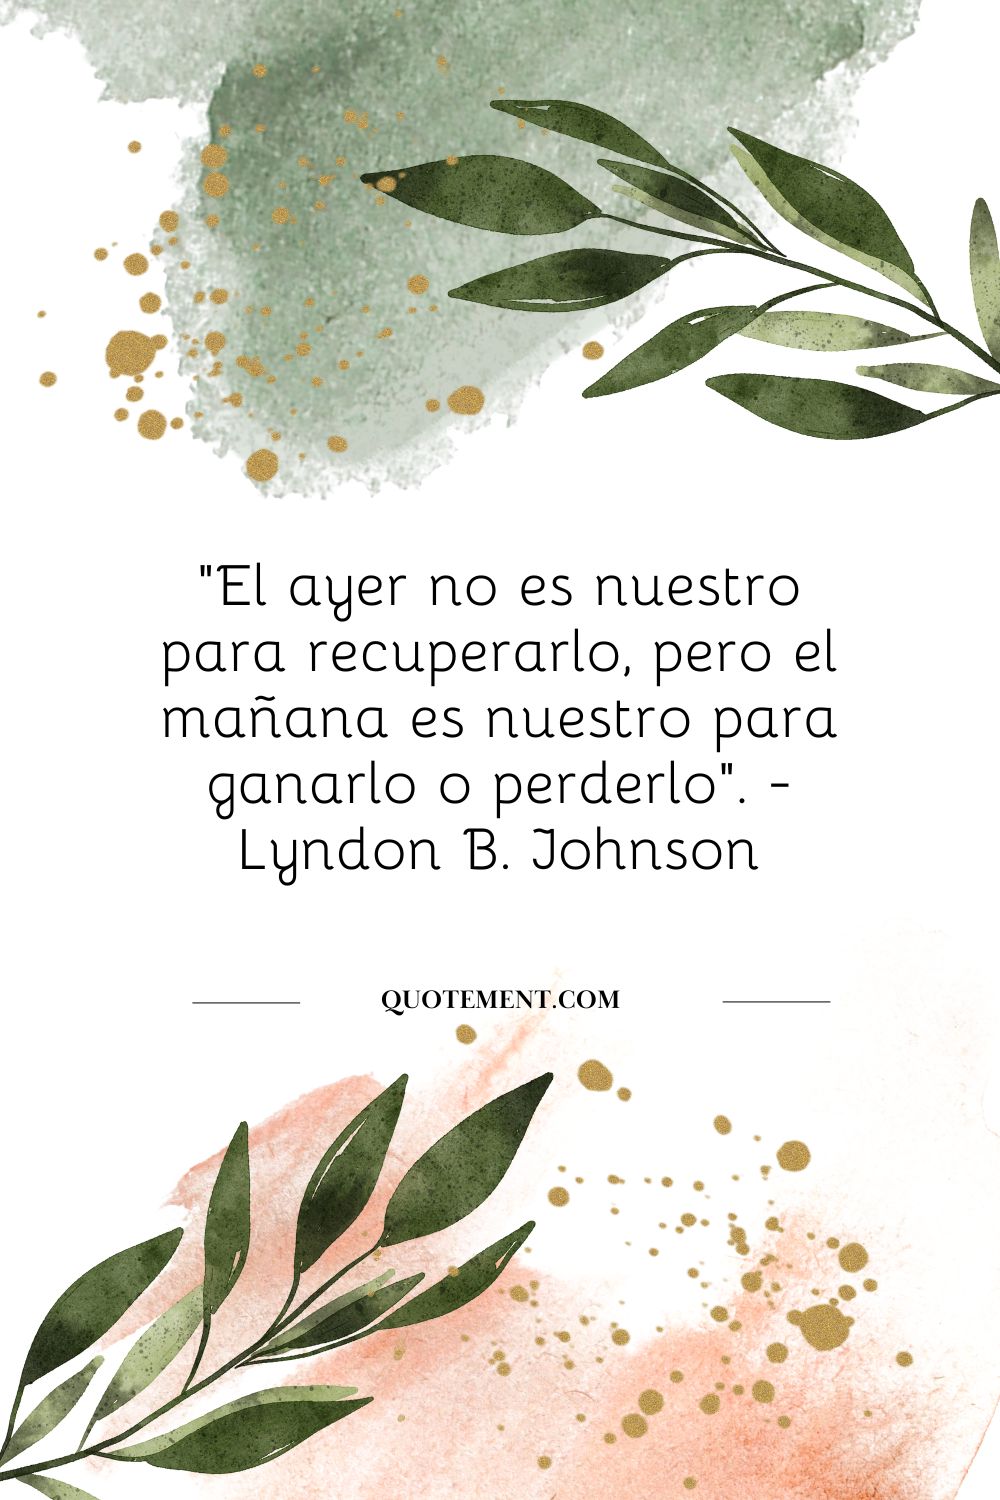 "El ayer no es nuestro para recuperarlo, pero el mañana es nuestro para ganarlo o perderlo". - Lyndon B. Johnson